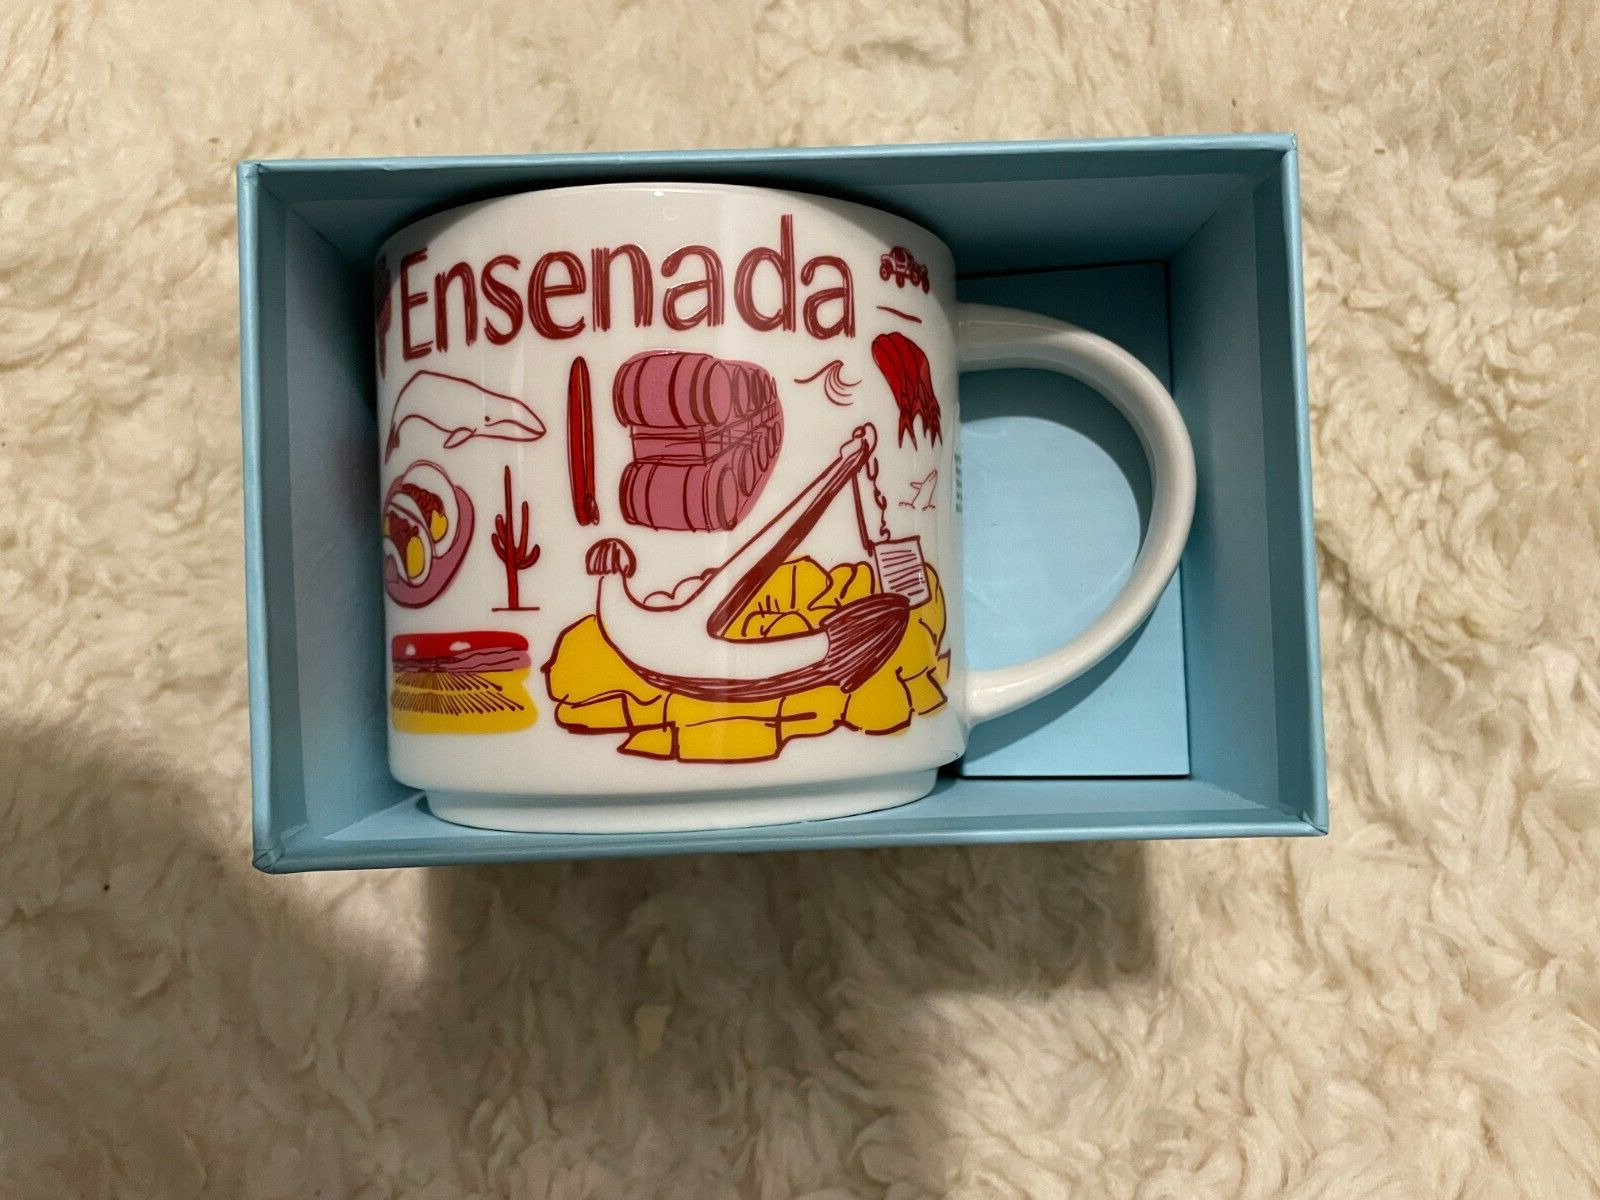 Starbucks Coffee Mug Ensenada (Mexico) / New in Box